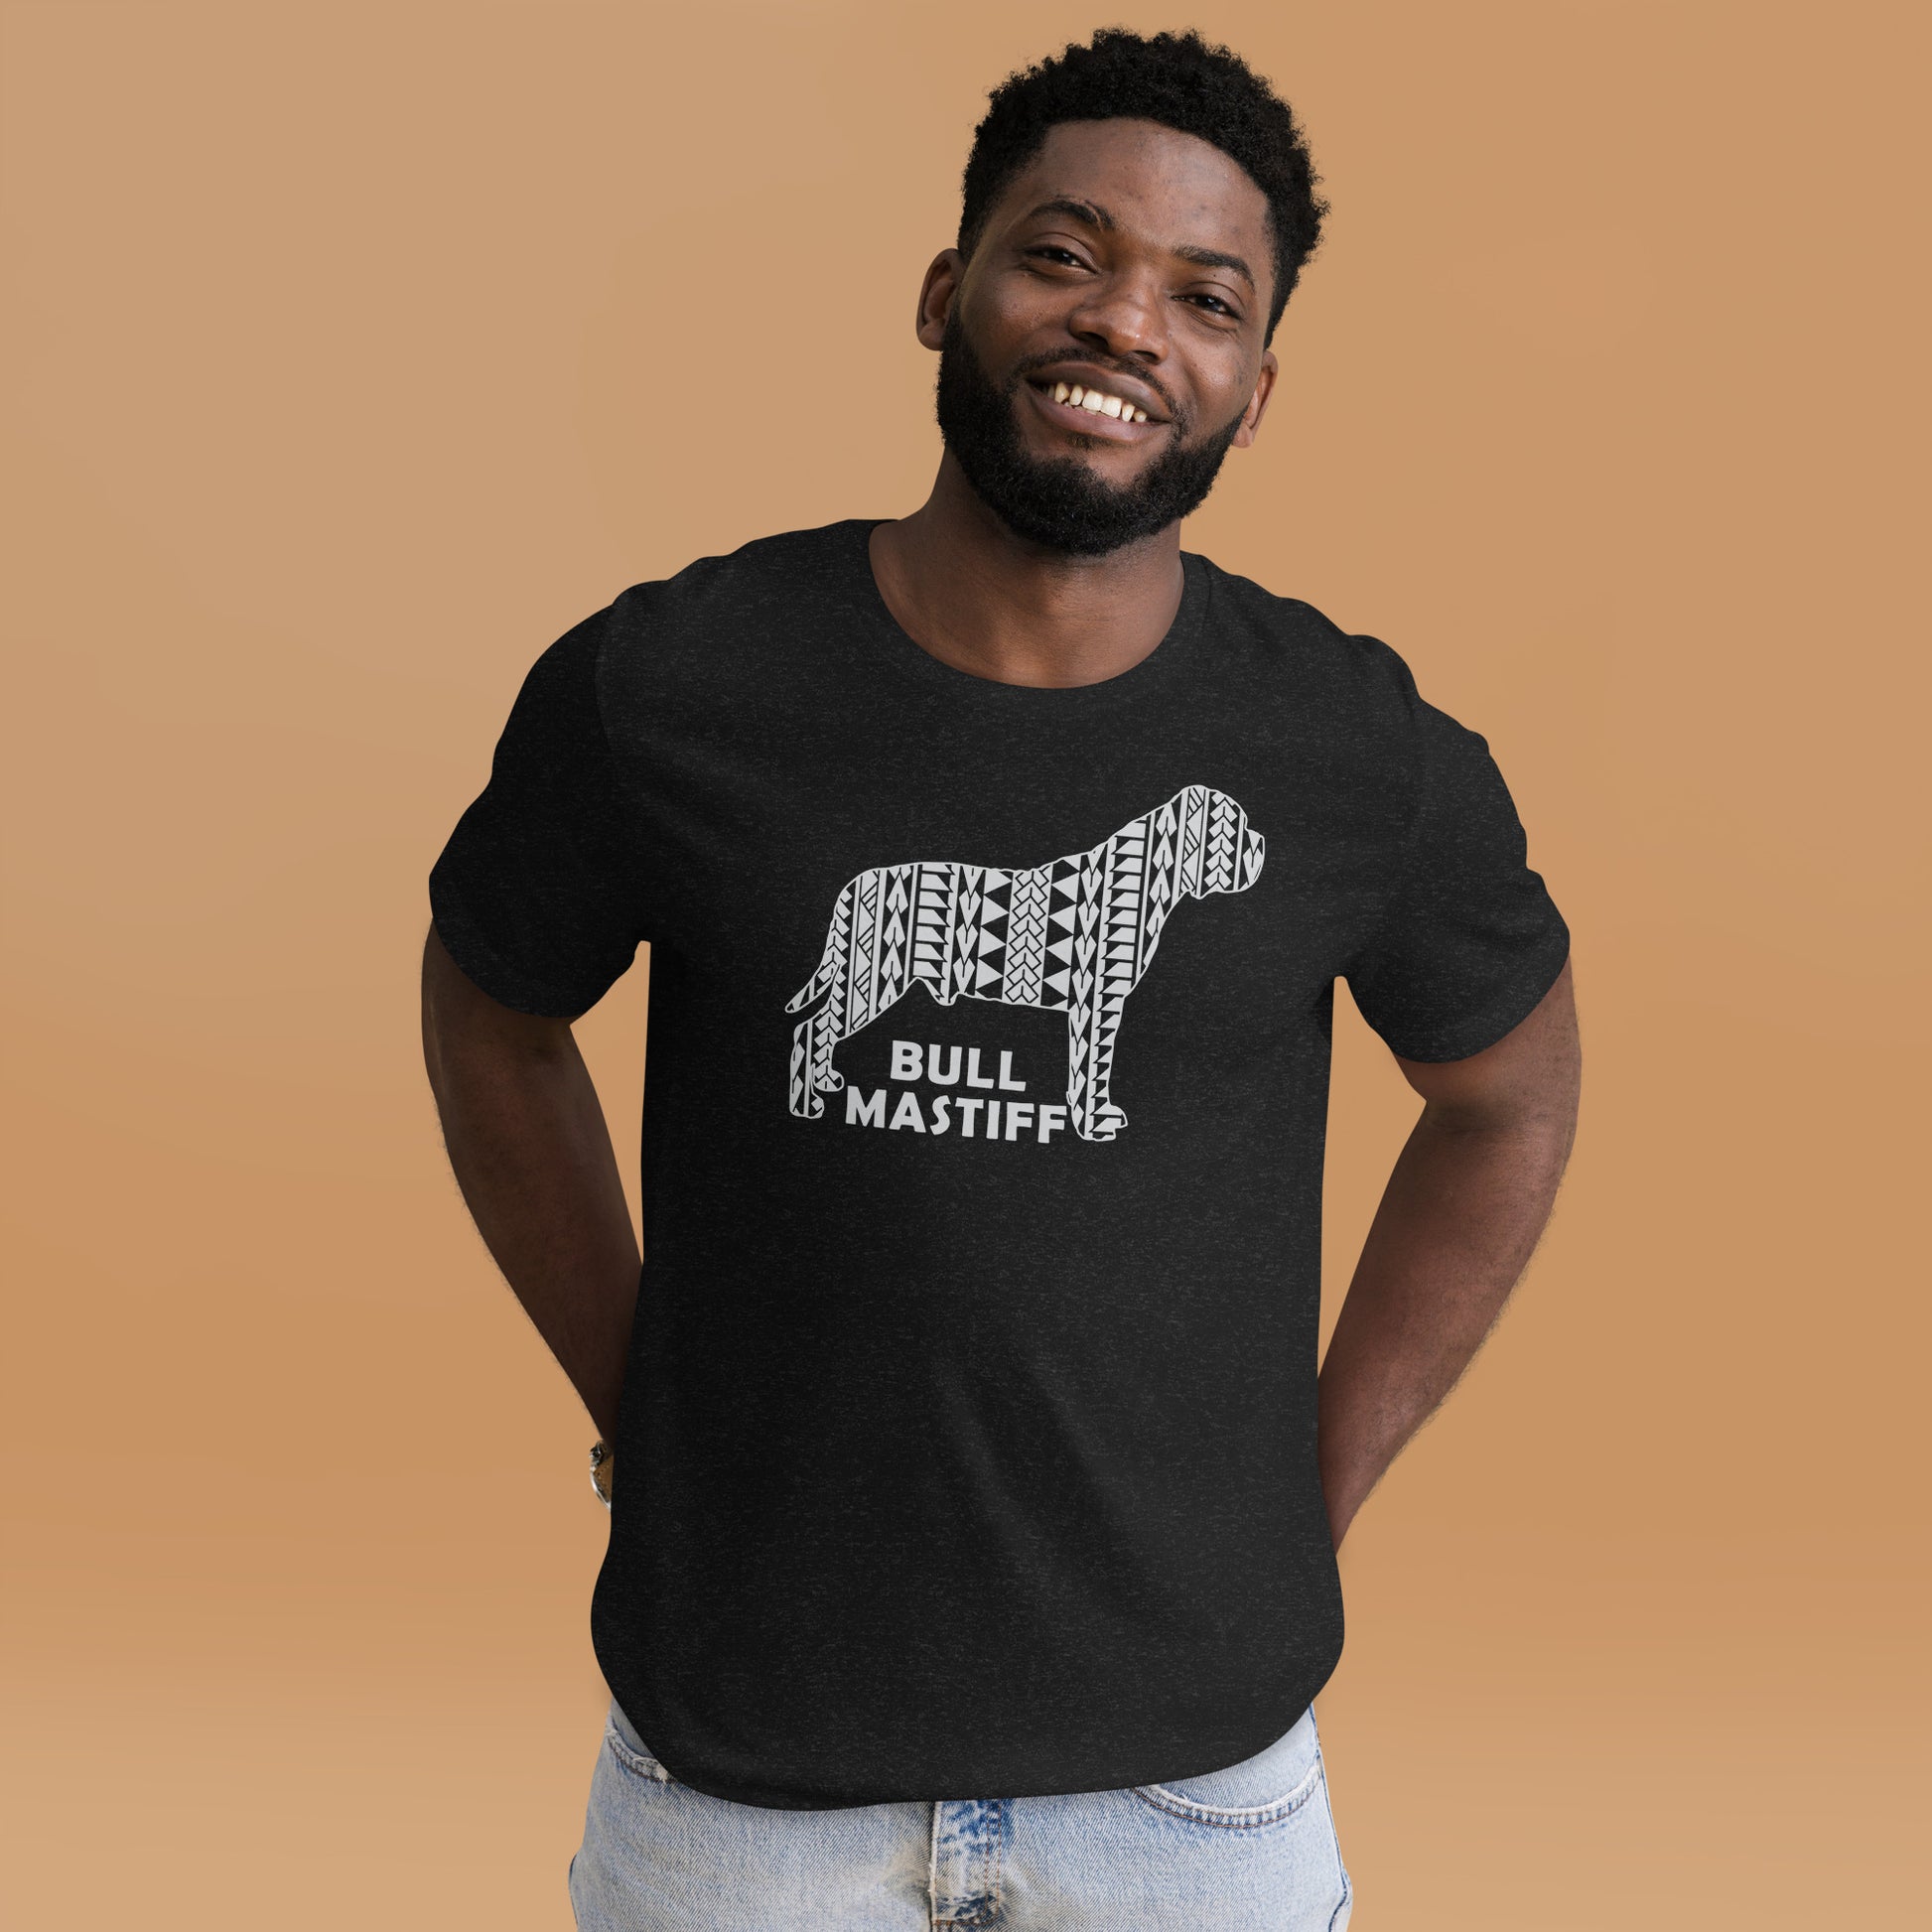 Bullmastiff Polynesian t-shirt heather by Dog Artistry.